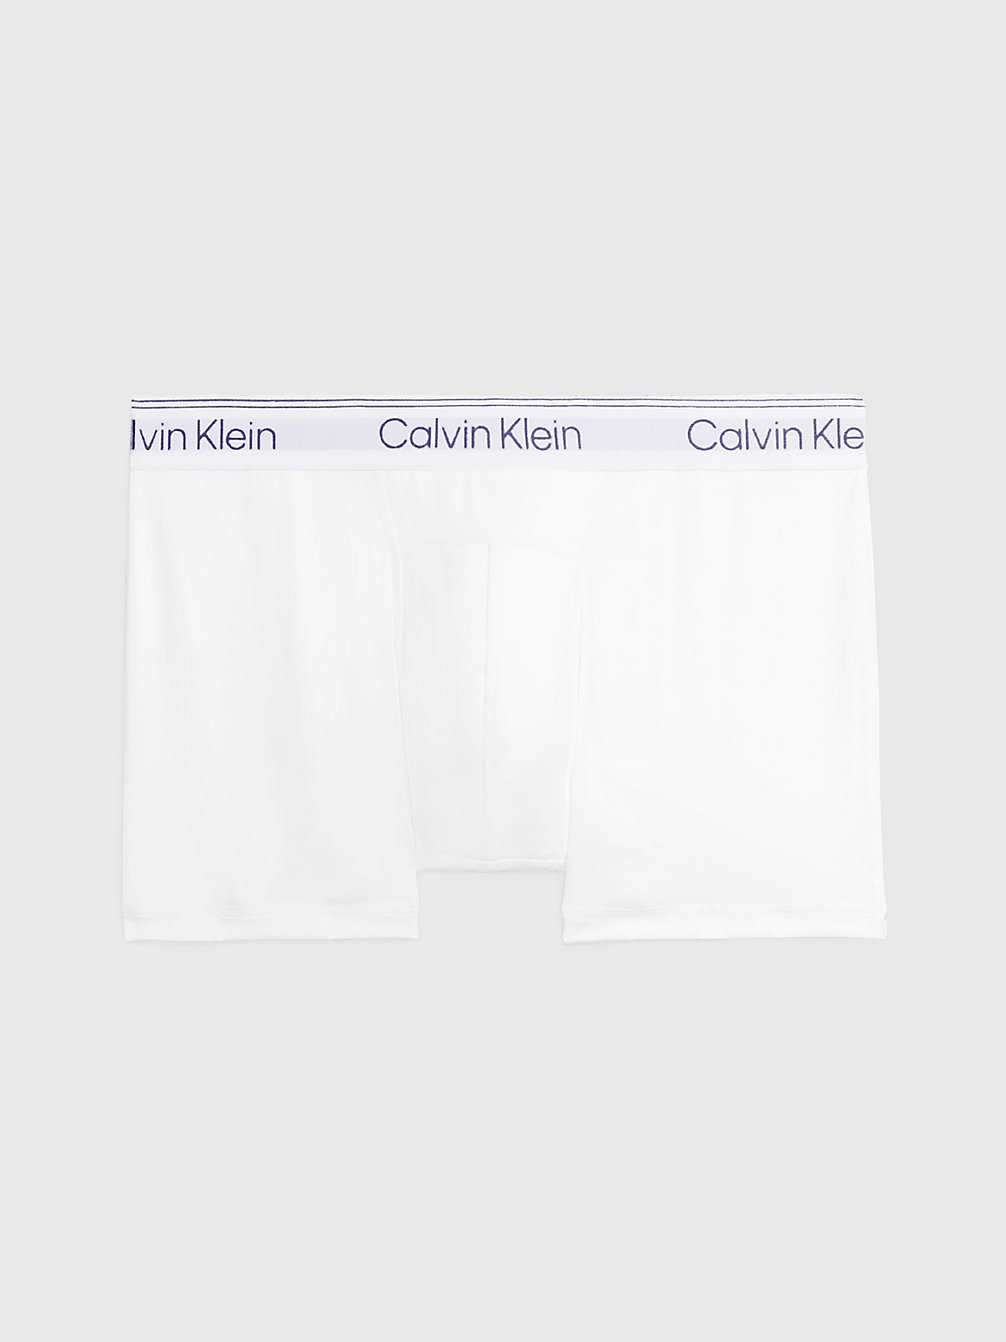 Bóxers - Athletic Cotton > WHITE > undefined men > Calvin Klein